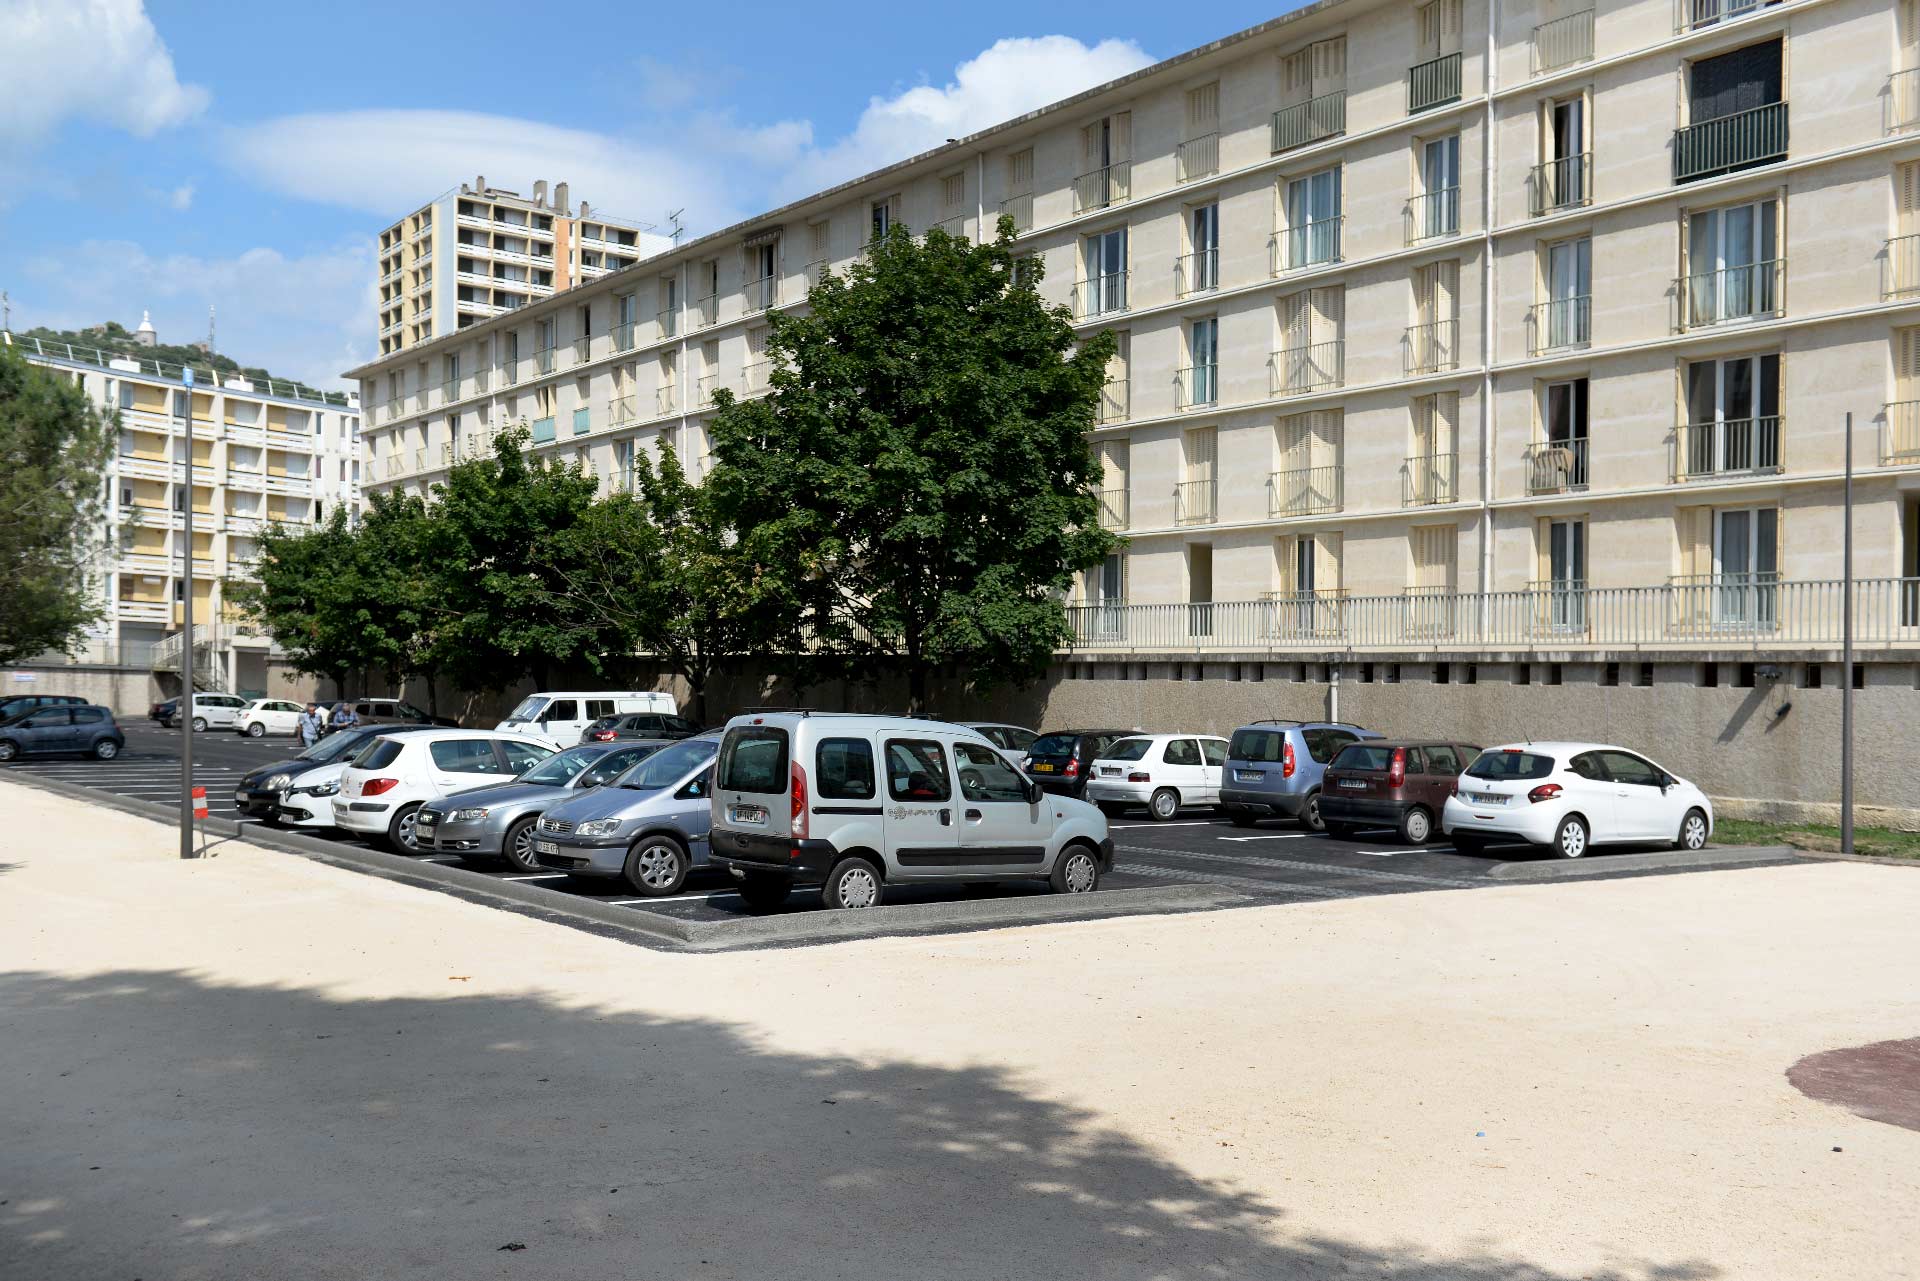 105 nouvelles places de stationnement sont disponibles en centre-ville d’Alès